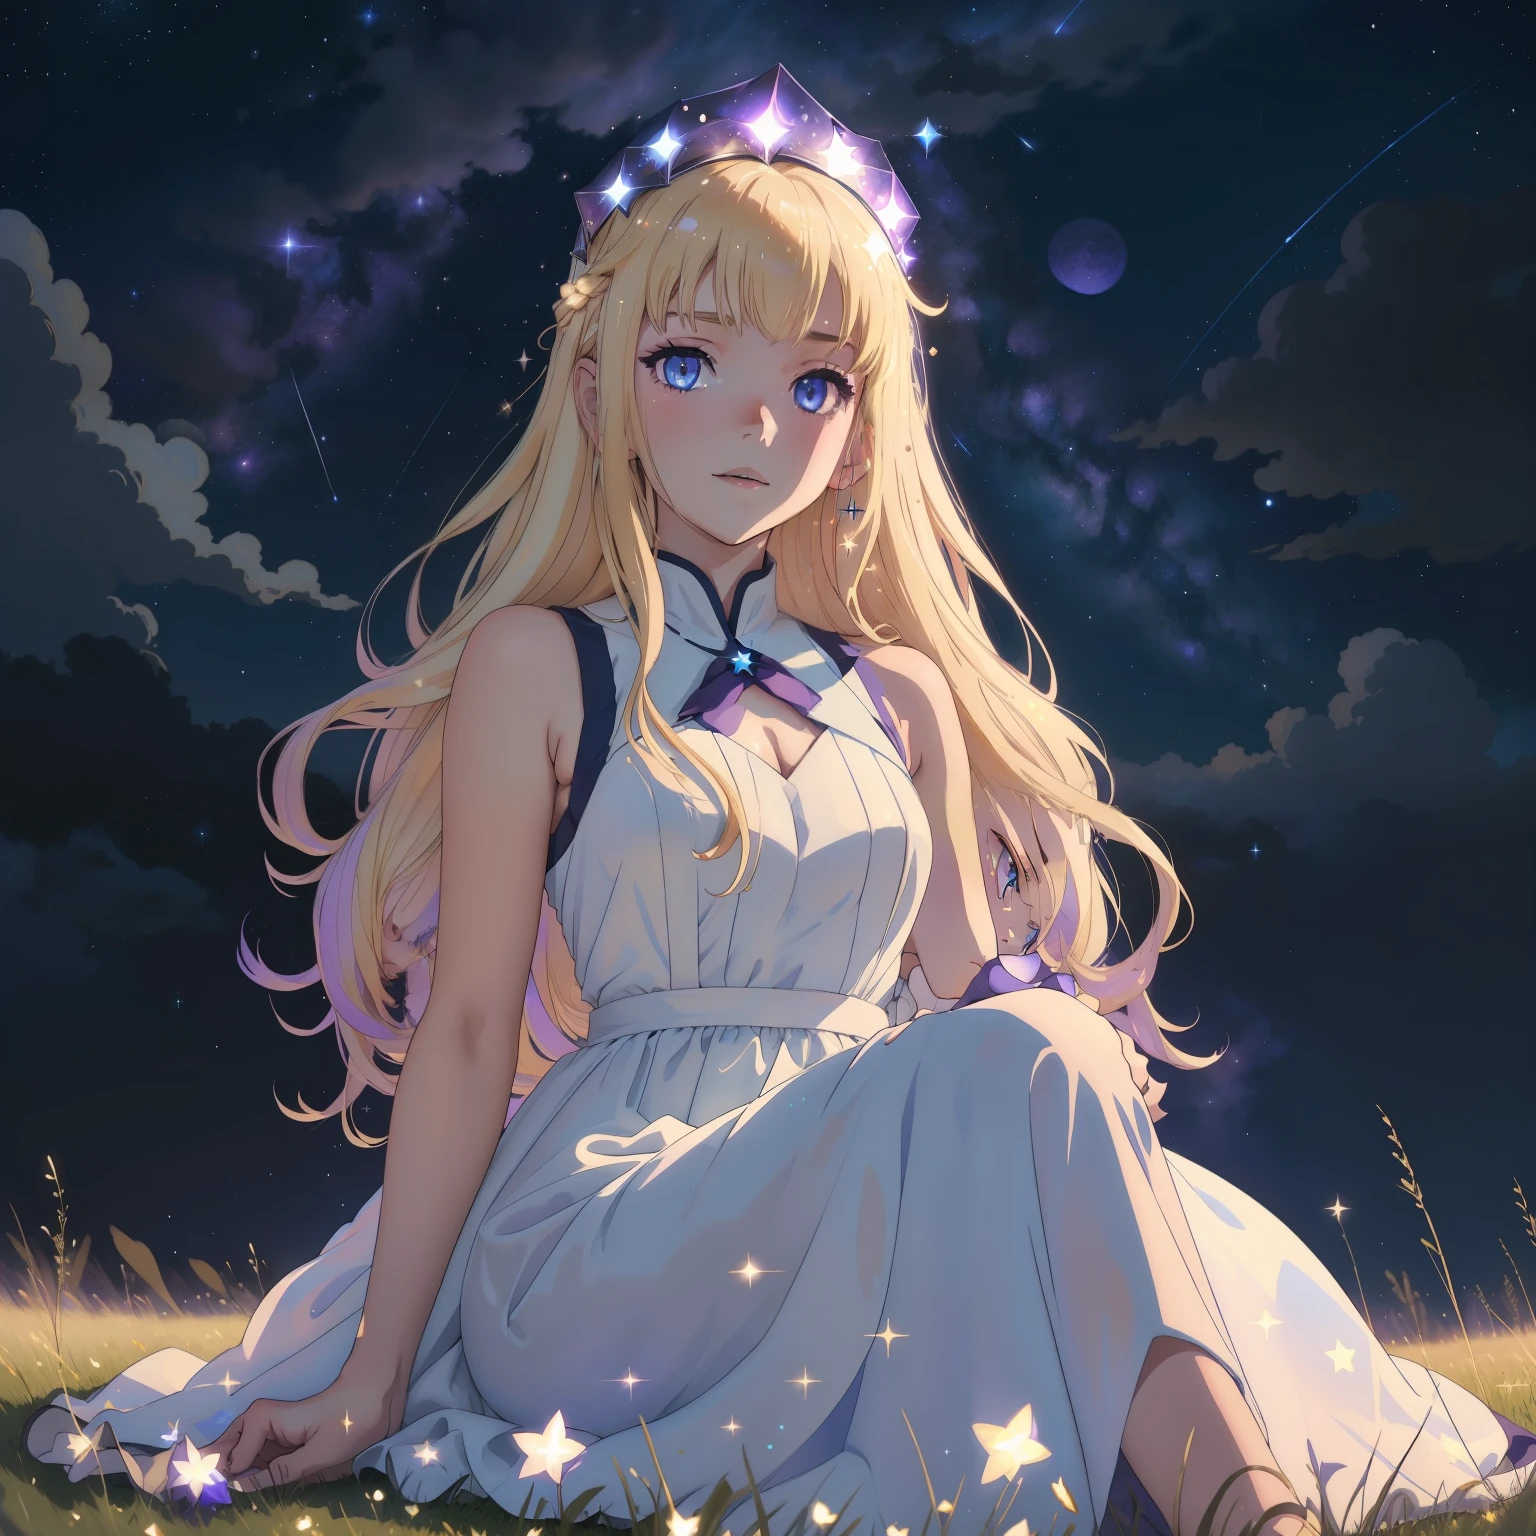 淡い青紫色の目をした明るいブロンドの髪のアニメの女の子が、キラキラ光るノースリーブの天体のような半透明のロングドレスを着て、暗い不吉な星空の下の暗い草の上に一人で座っている。, 空に流れ星, 彼女の髪に無数の小さな星が輝いている